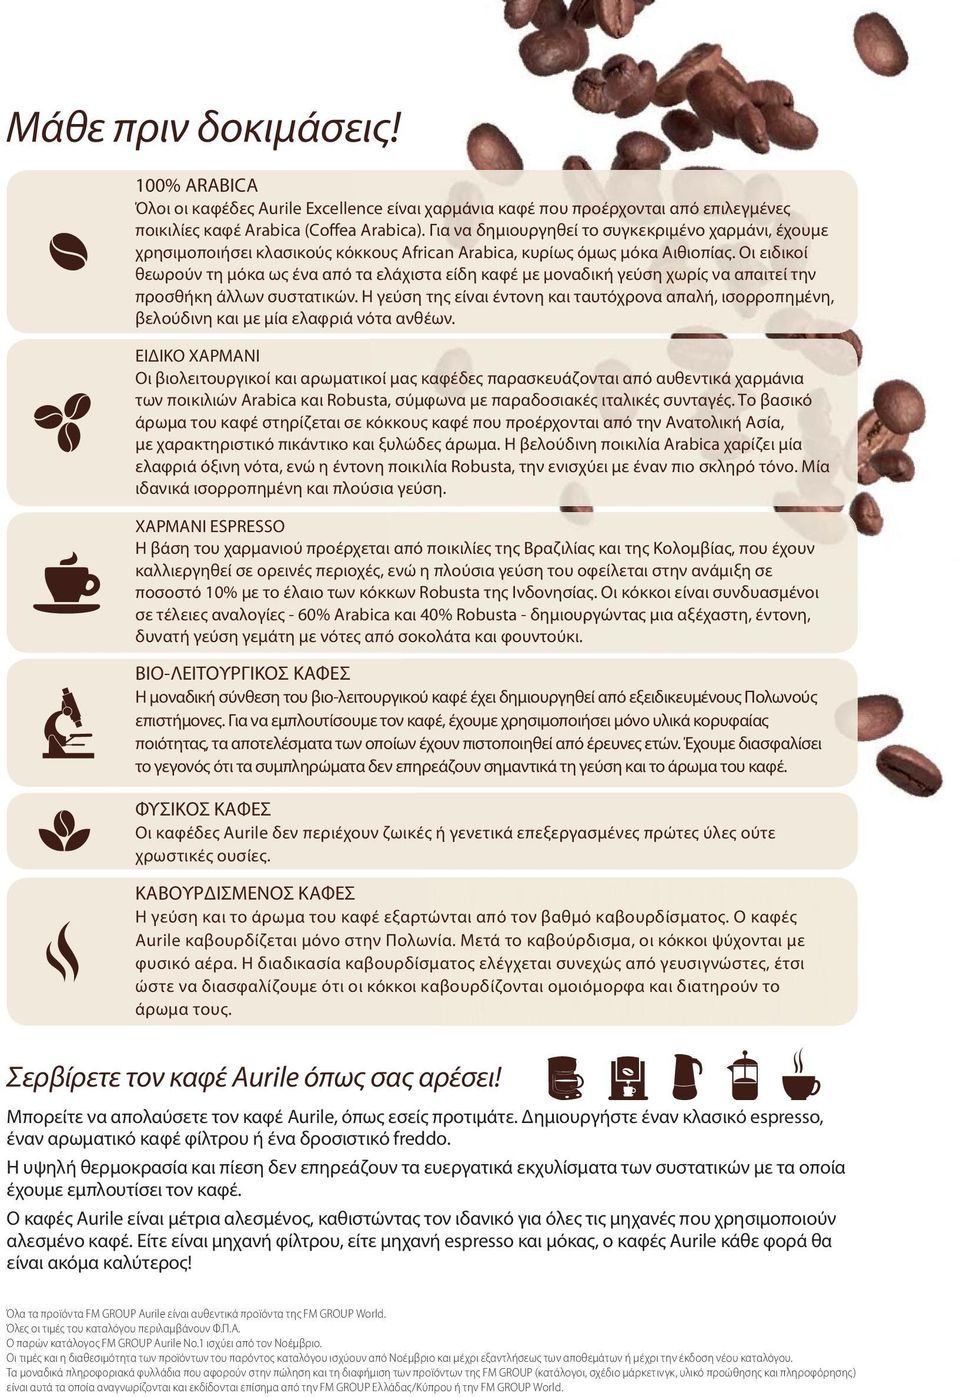 Οι ειδικοί θεωρούν τη μόκα ως ένα από τα ελάχιστα είδη καφέ με μοναδική γεύση χωρίς να απαιτεί την προσθήκη άλλων συστατικών.